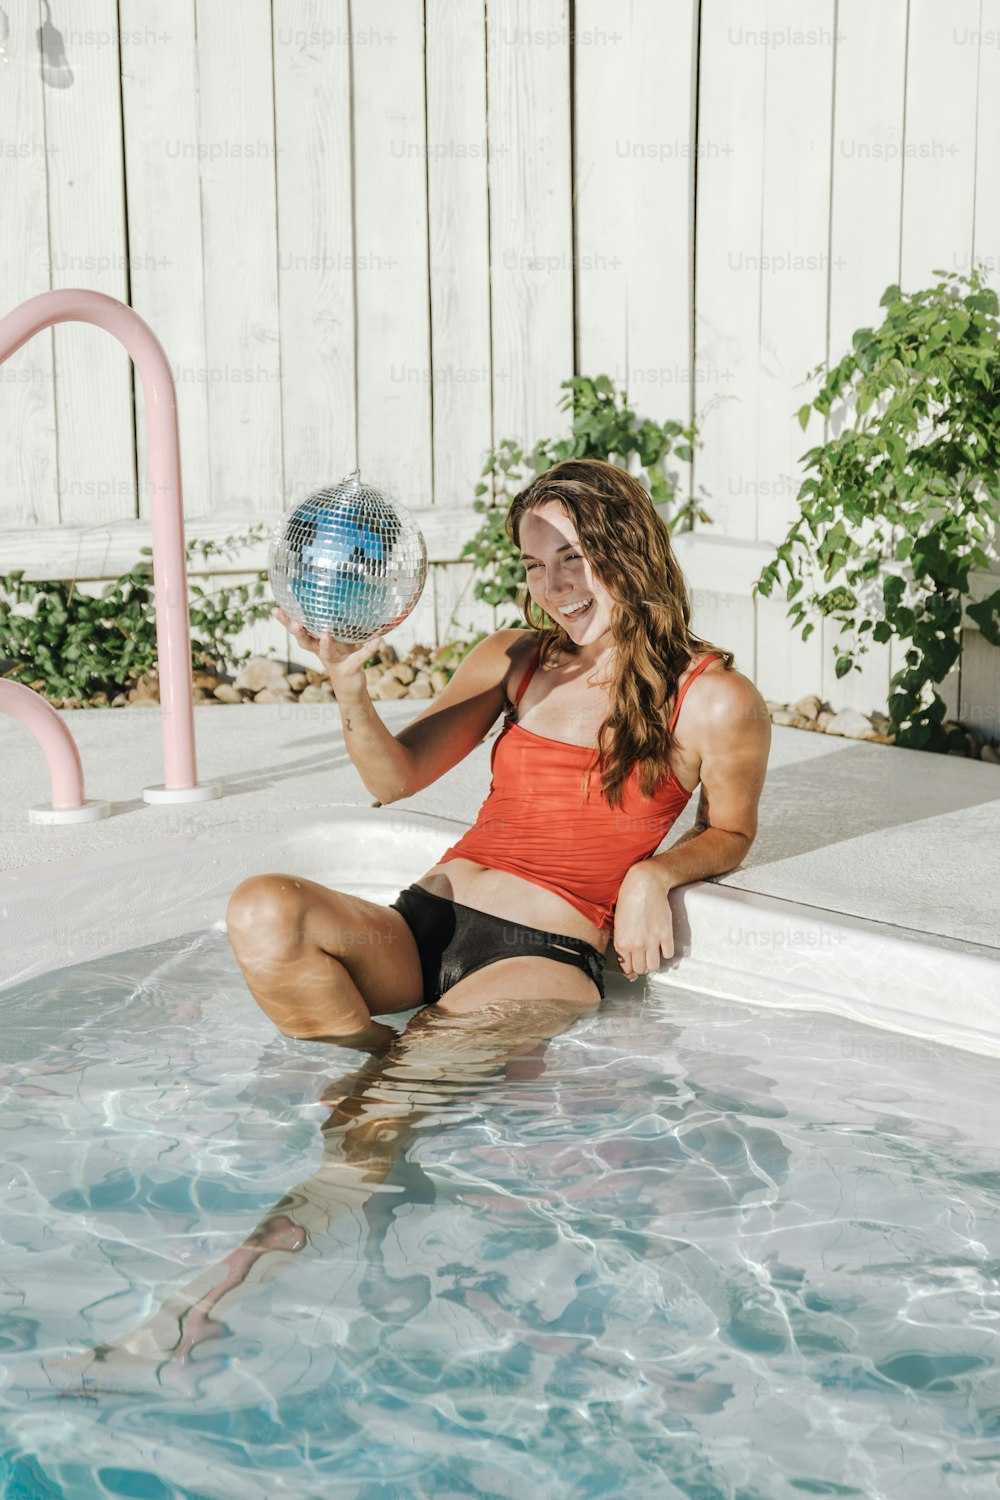 ディスコボールを持つプールに座っている女性